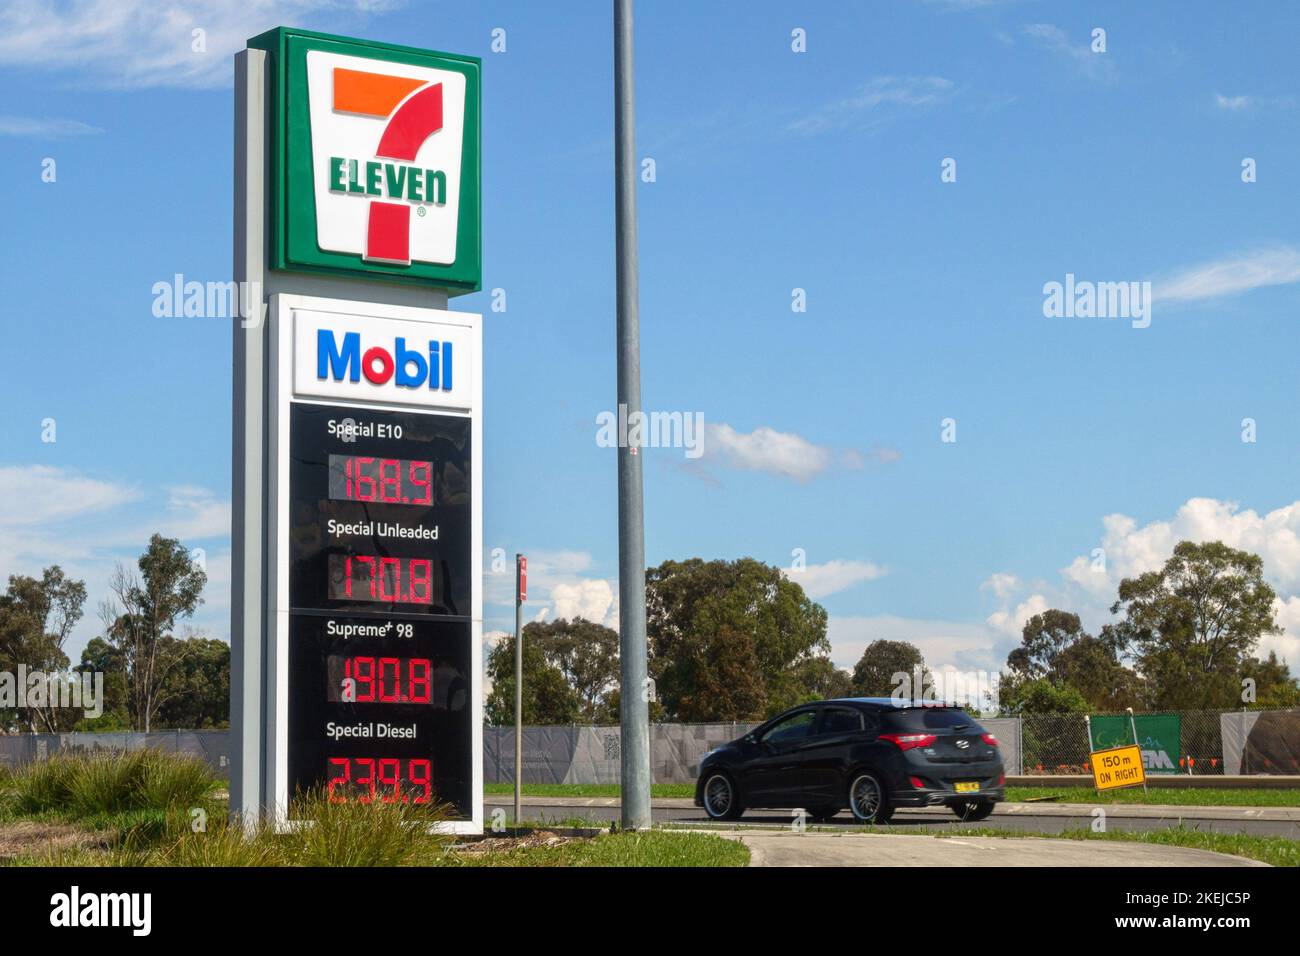 Un panneau de prix à une station service Eleven / Mobil 7 à Emerald Hills à Leppington, Sydney, Australie Banque D'Images